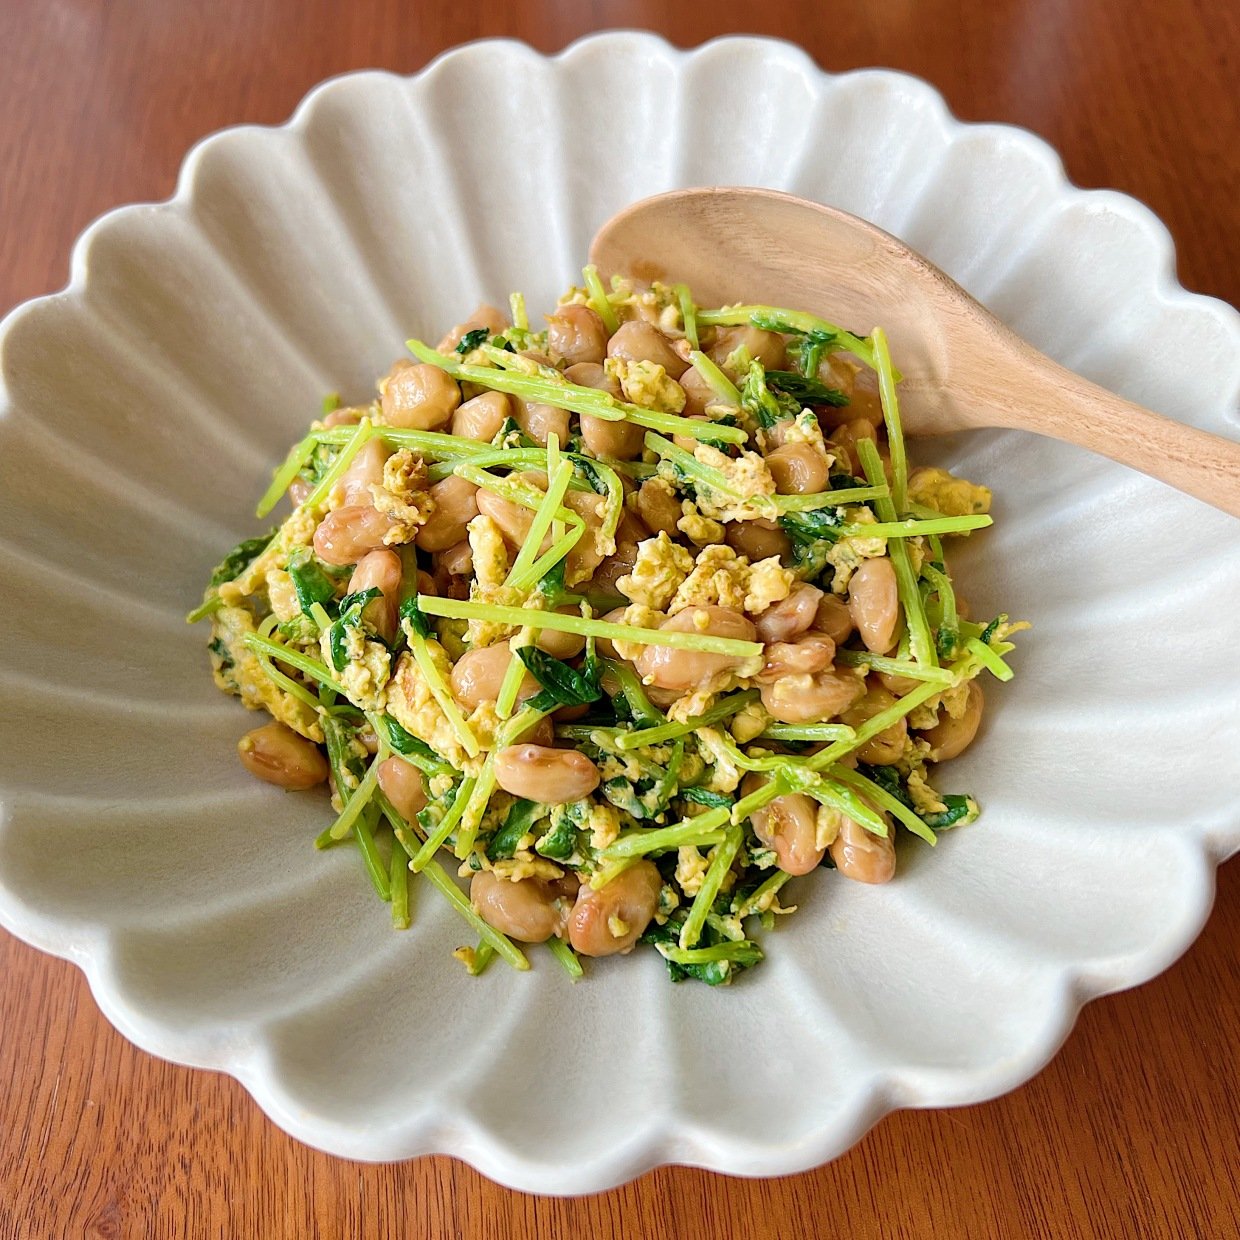  「納豆」に混ぜると体がよろこぶ“食材の組み合わせ”とは？ 